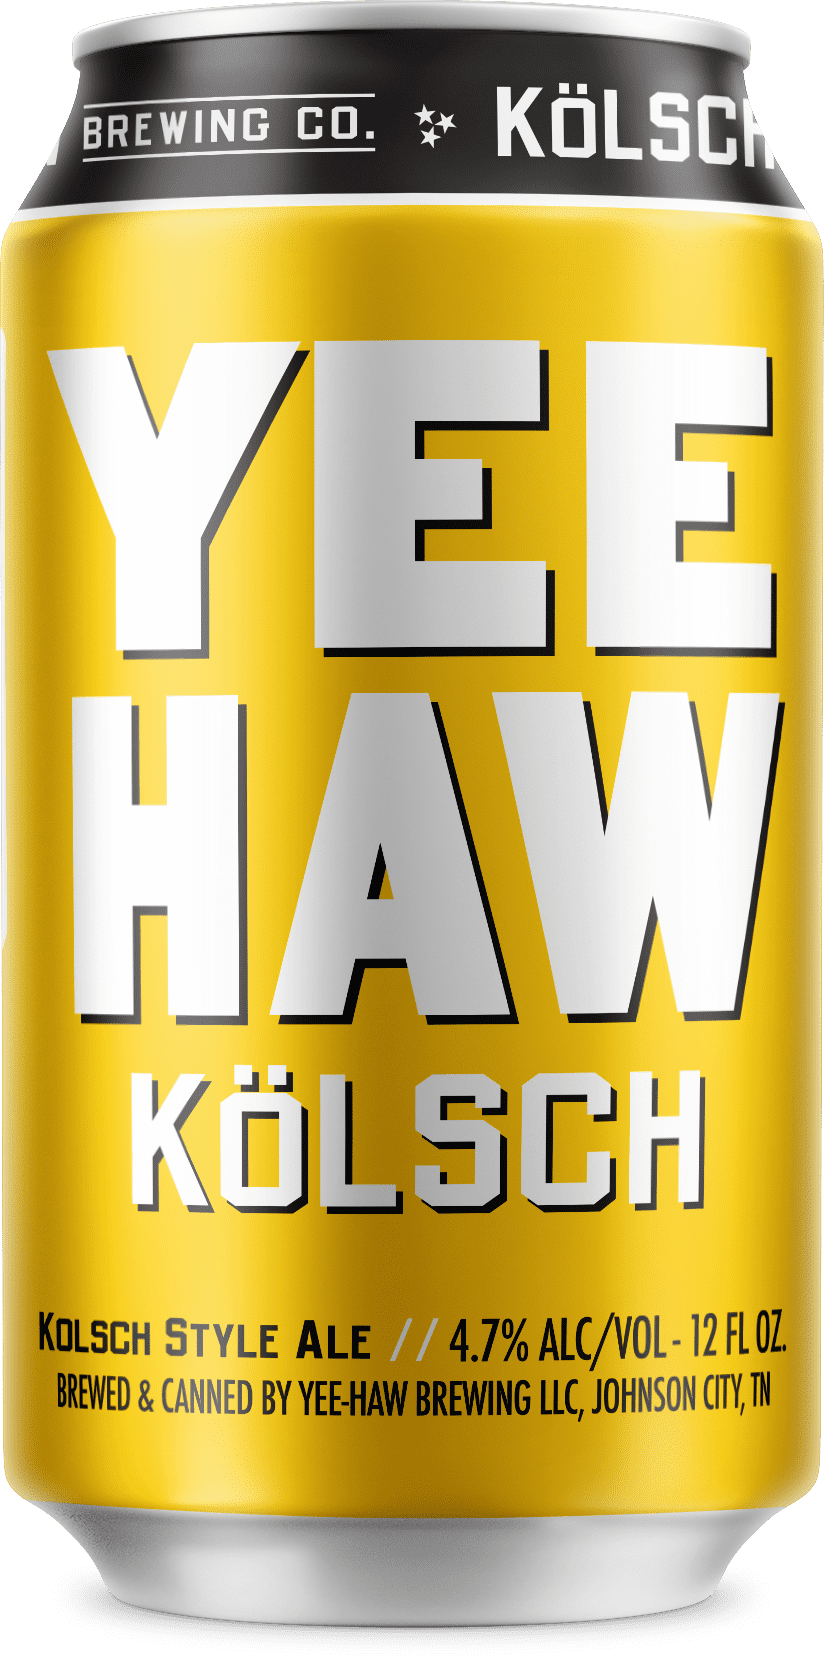 Kolsch beer can